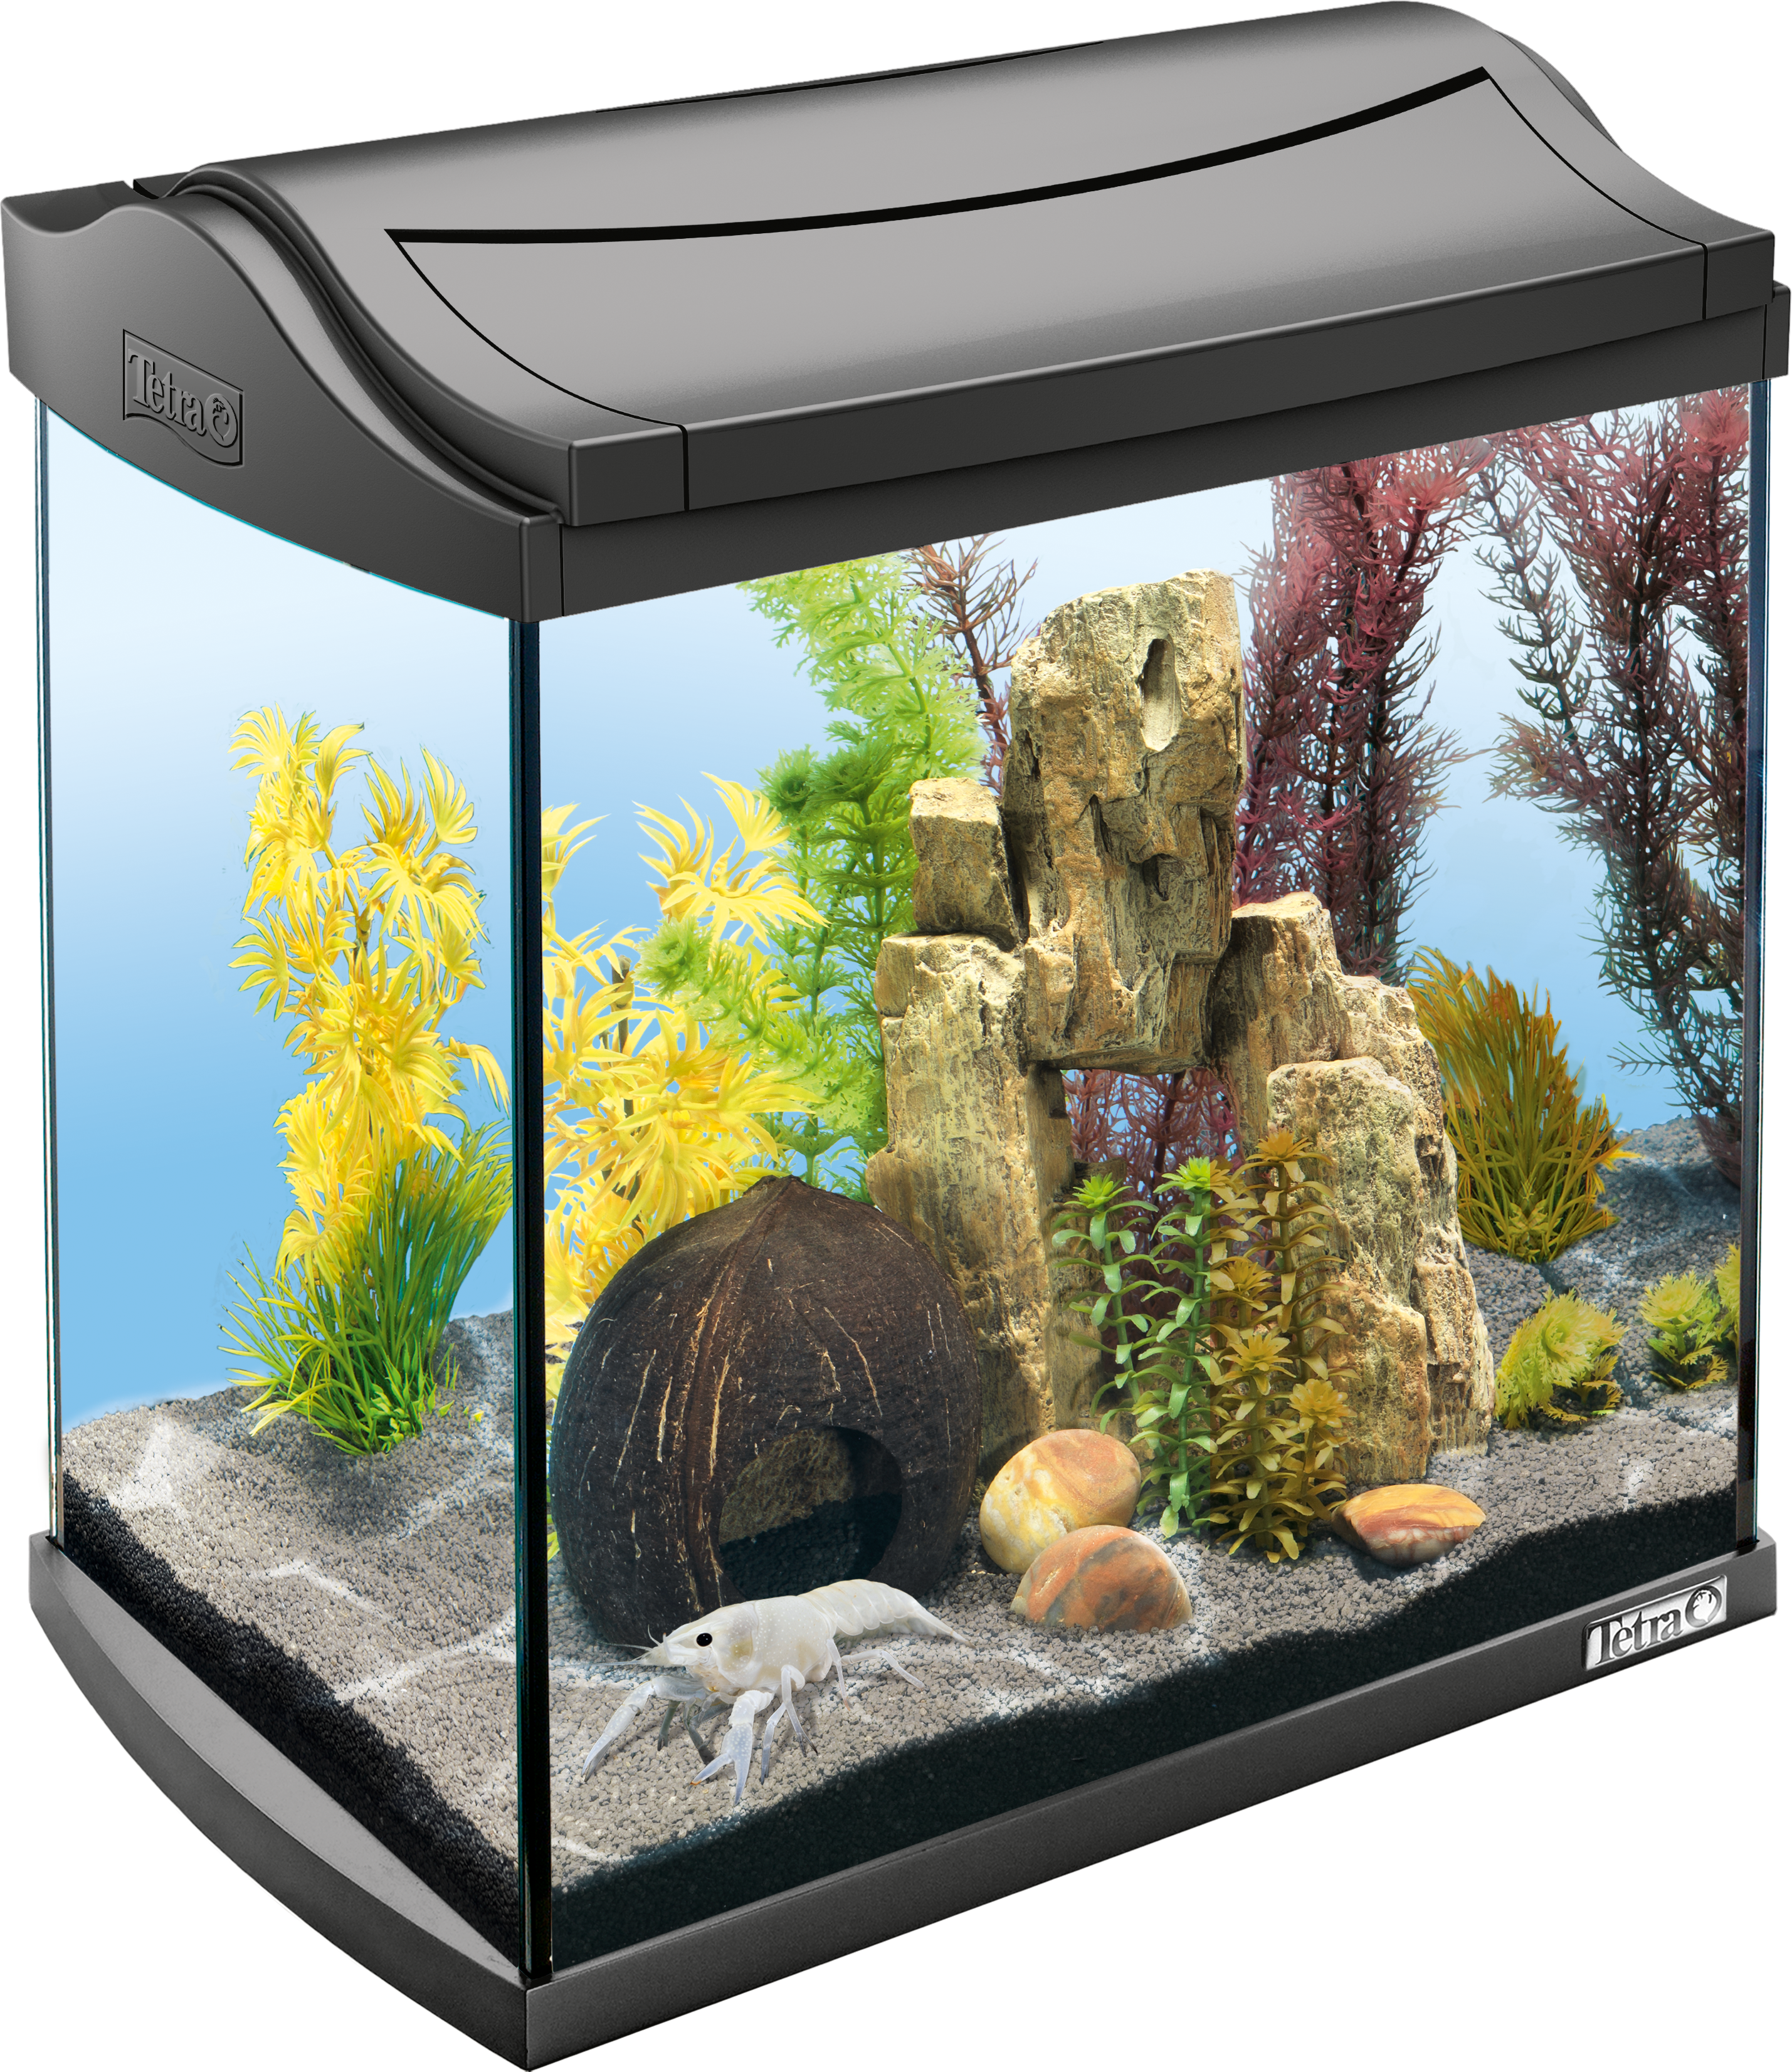 Albany twijfel Hoes 30L Tetra AquaArt LED aquarium - Crayfish: Tetra